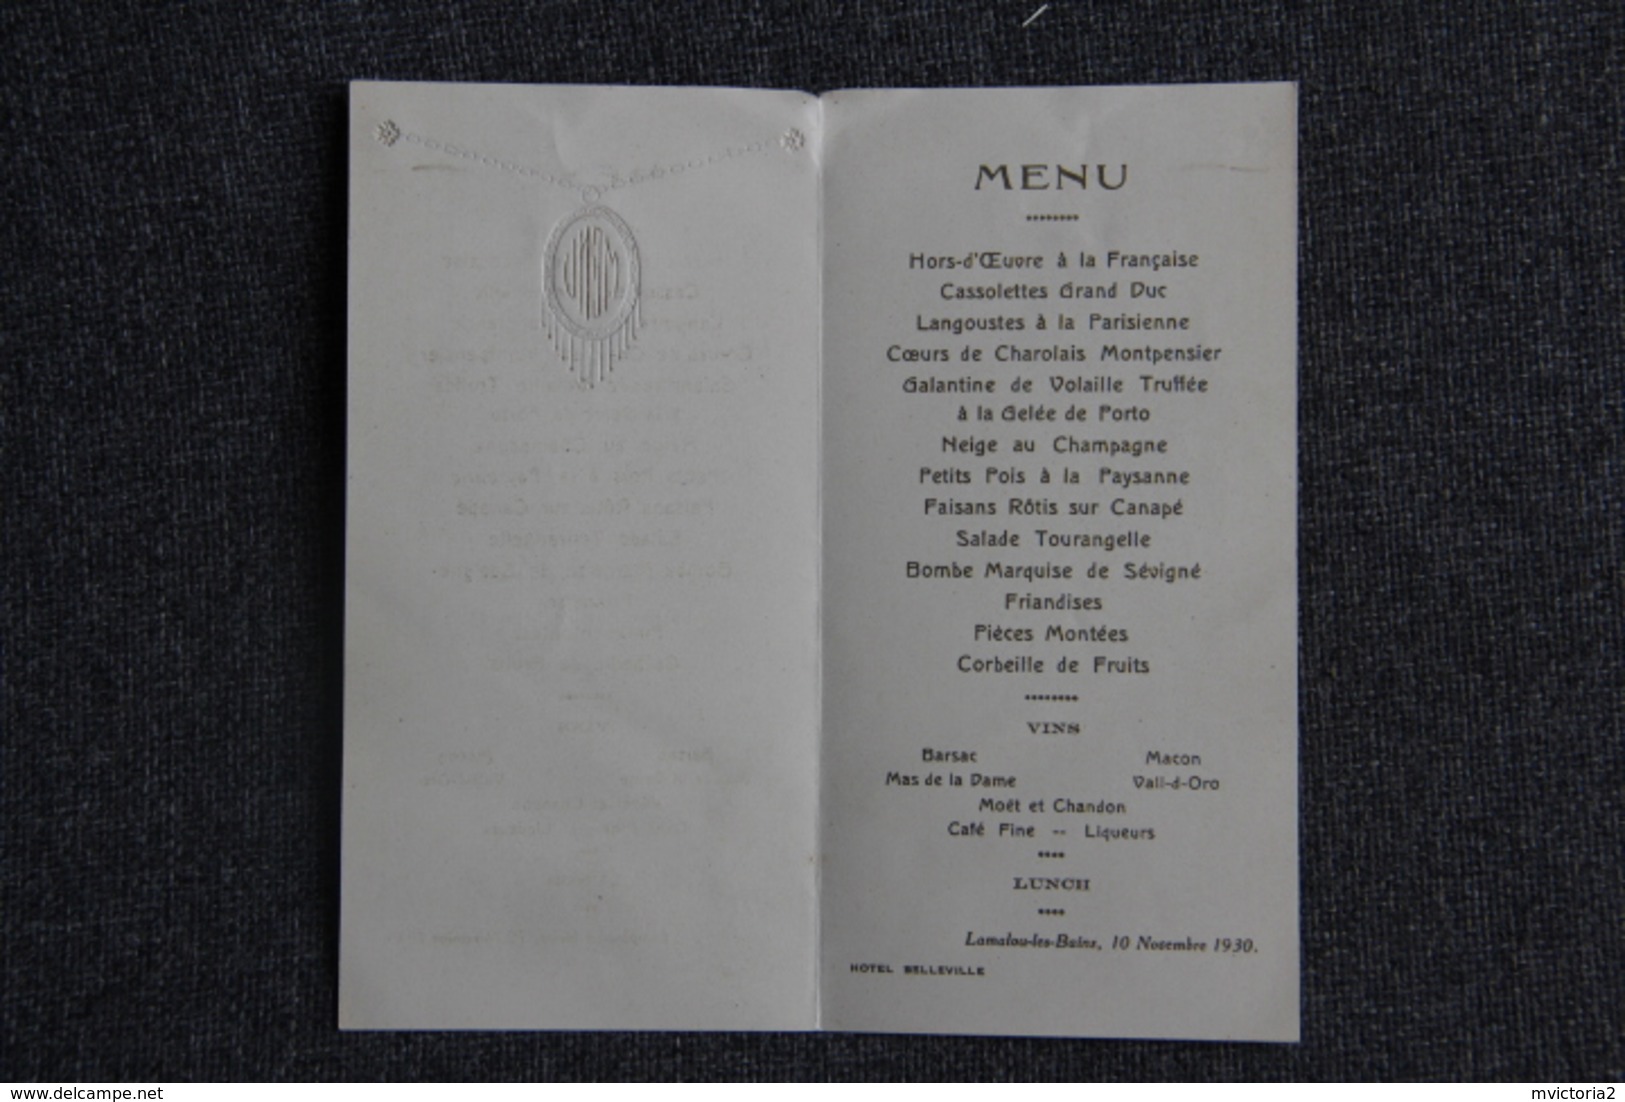 LAMALOU LES BAINS - Menu D'un Repas Pris à L'Hotel BELLEVILLE, Le 10 Novembre 1930 - Menu